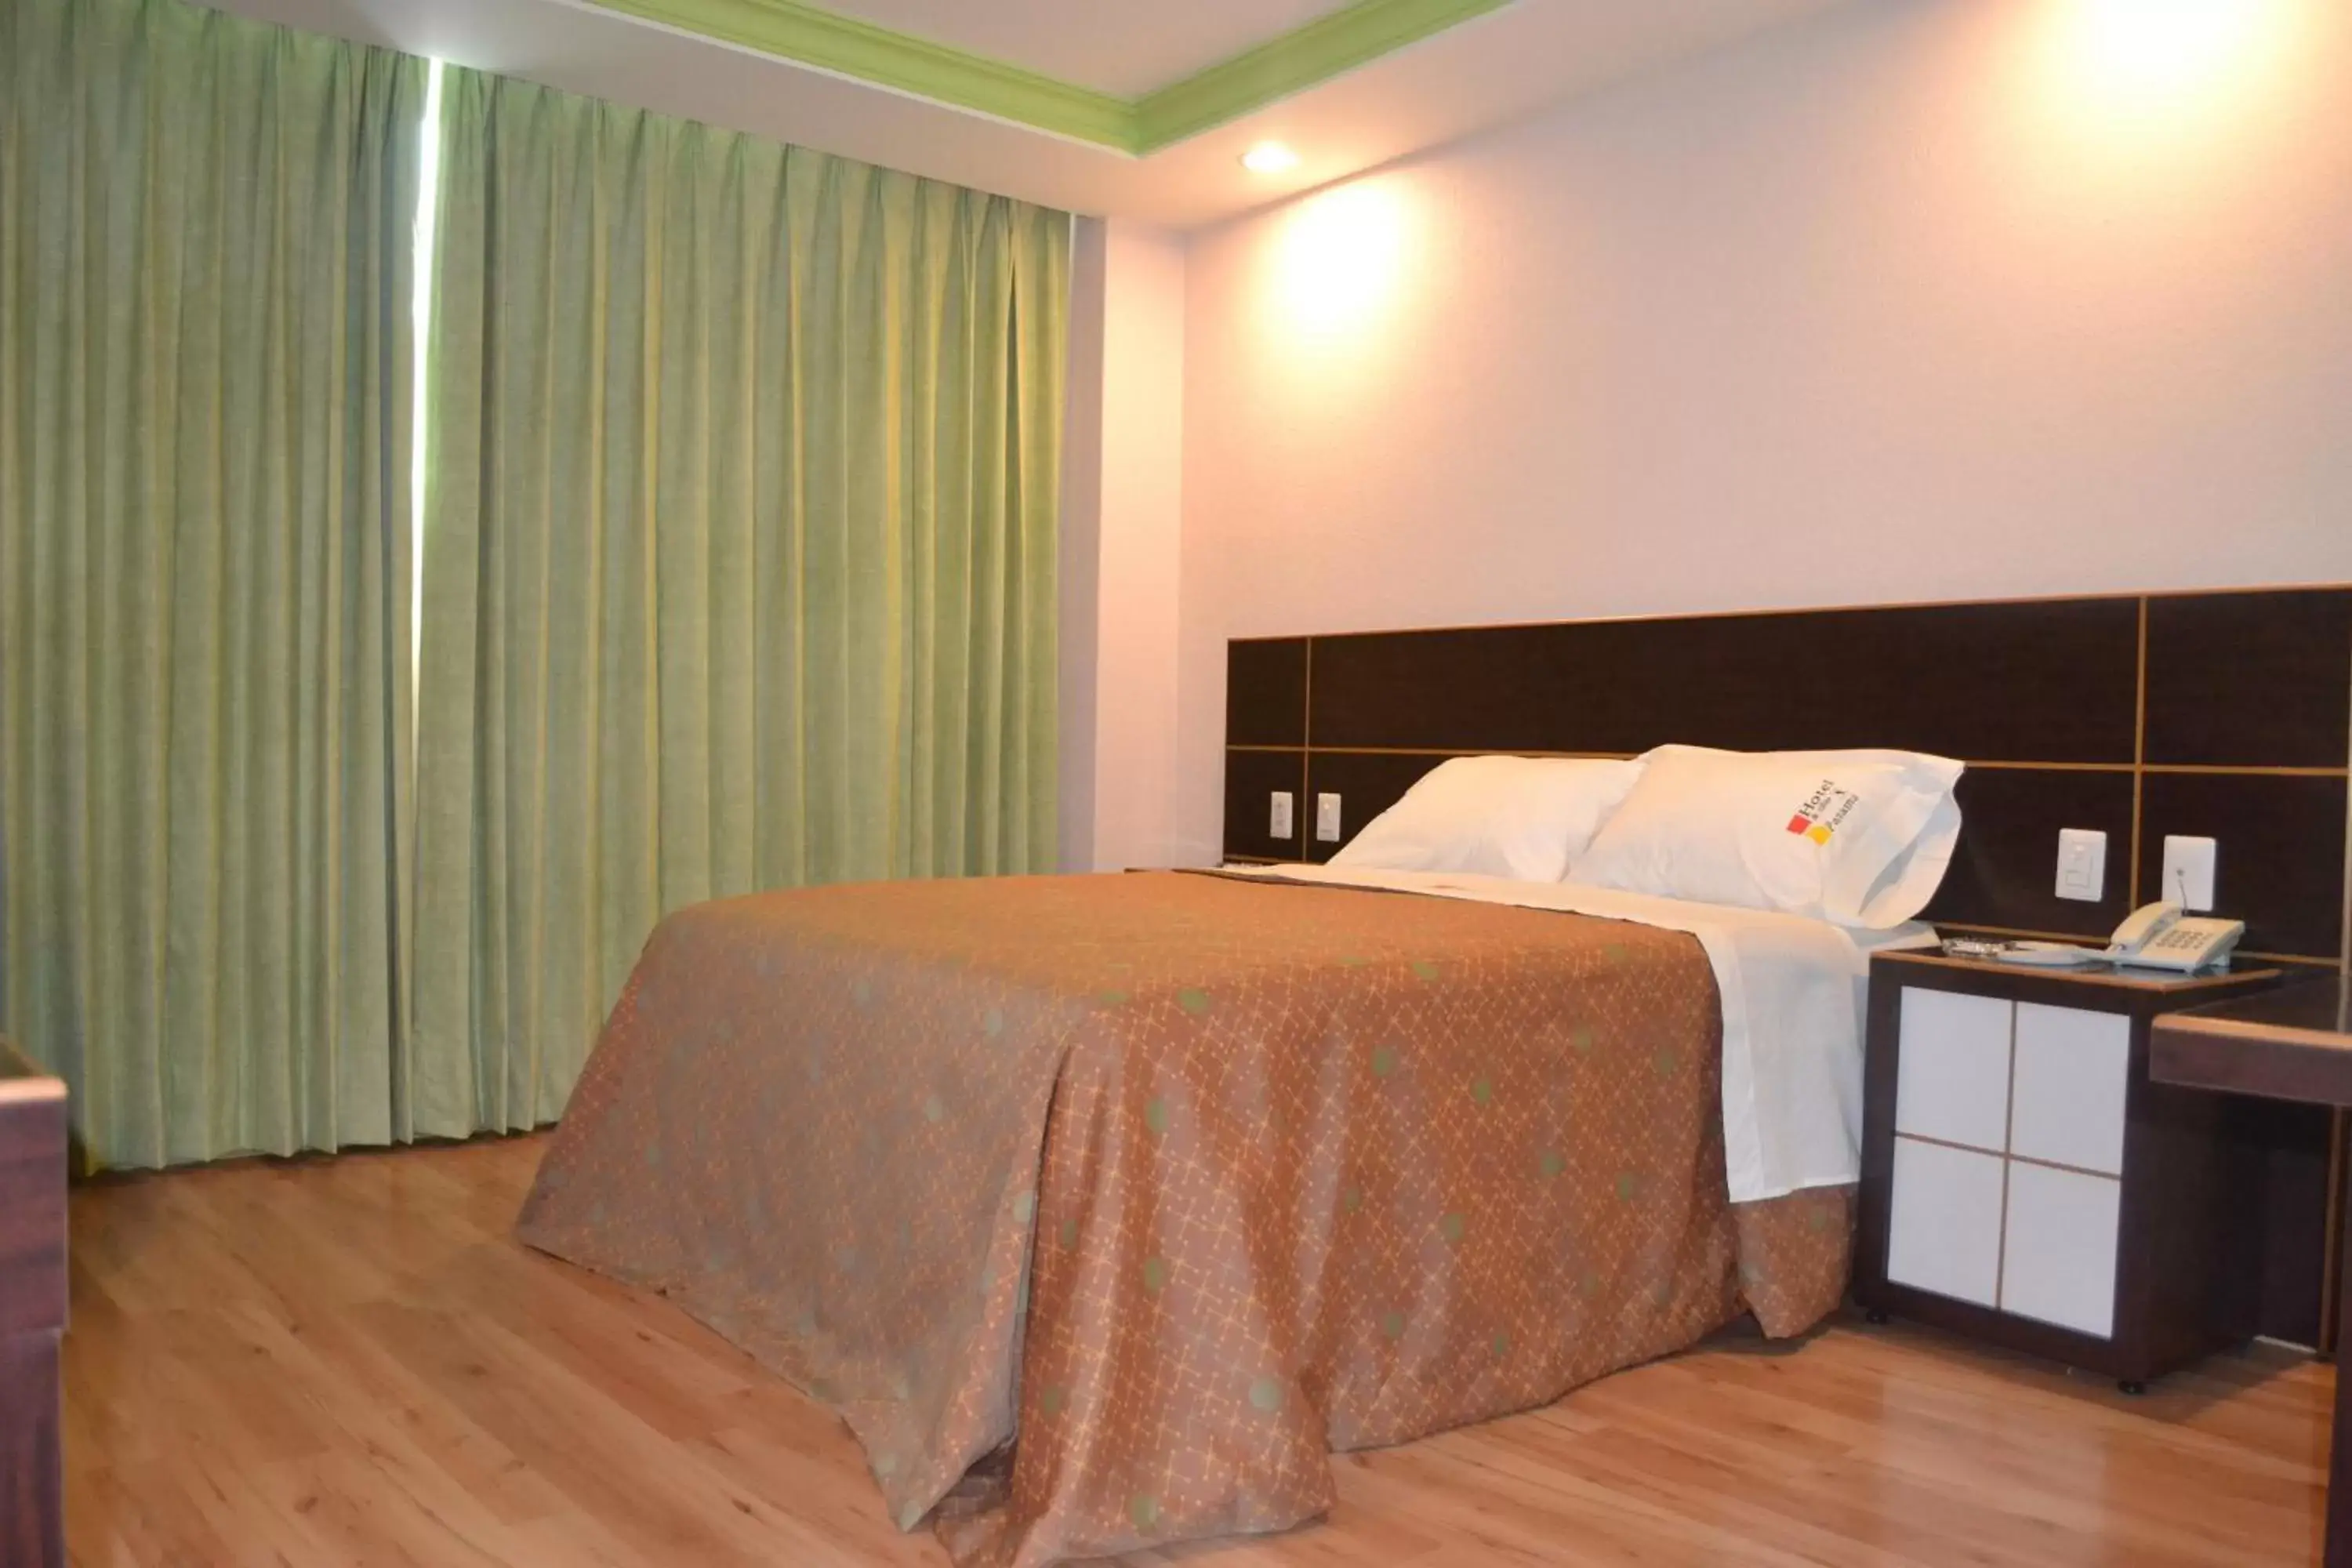 Standard Room in Hotel & Villas Panamá